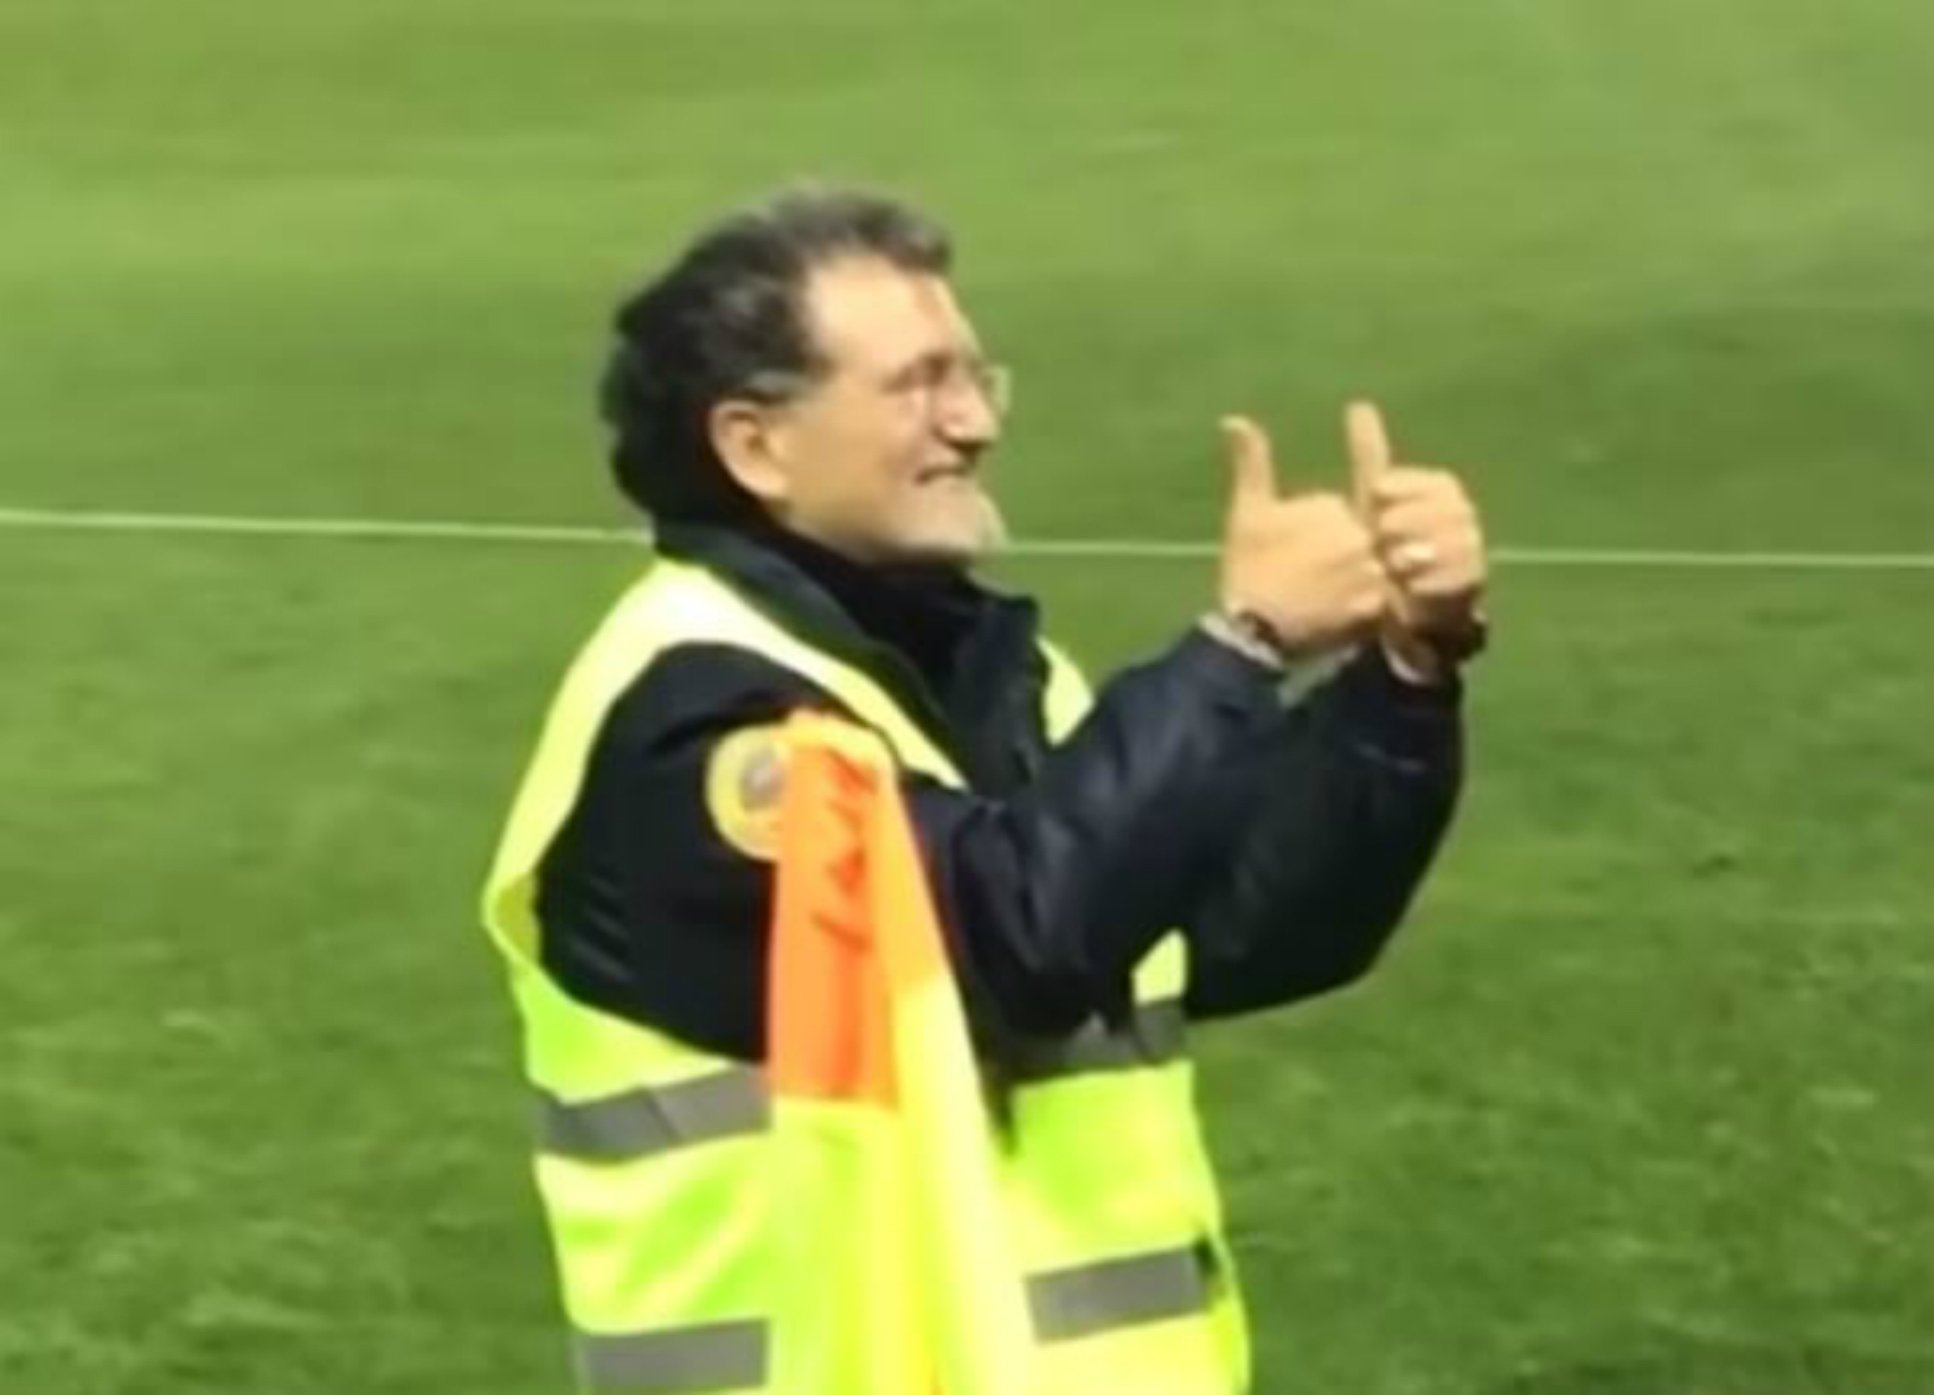 El nuevo trabajo de 'Rajoy': vigilante de seguridad de un campo de fútbol